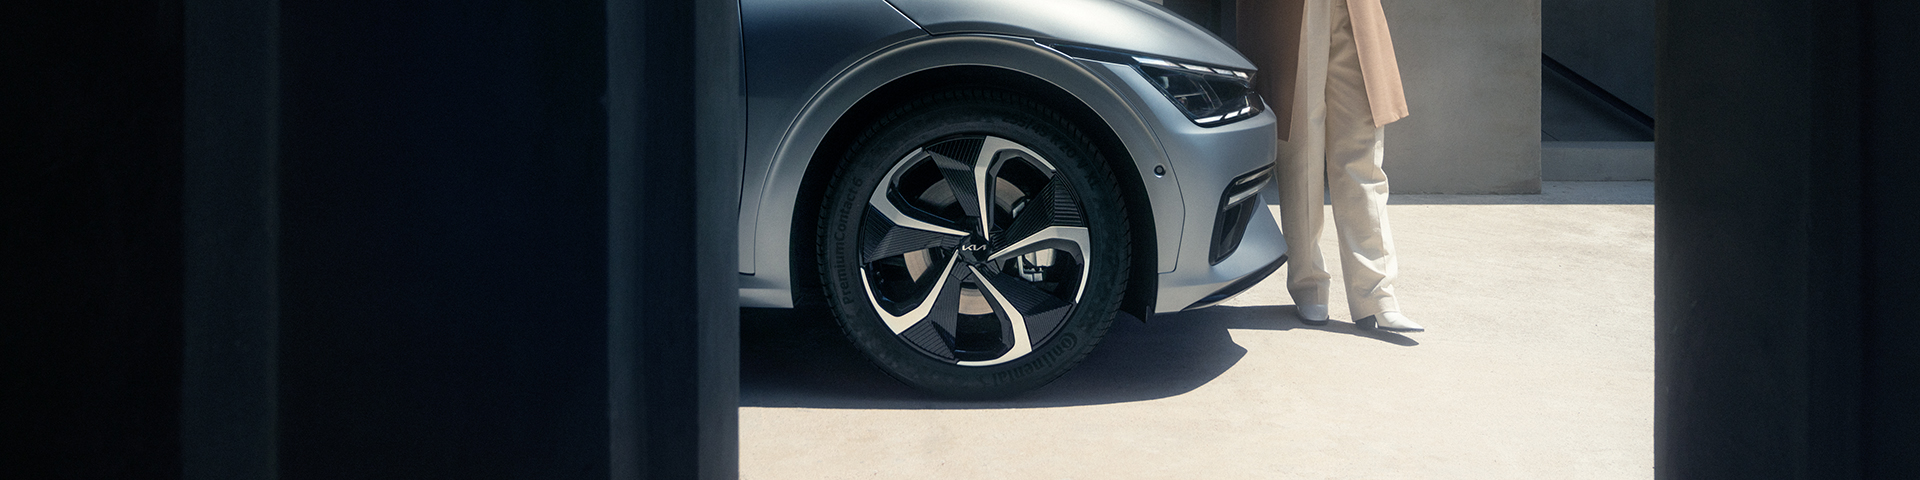 Kia Genuine Wheel and Tyres